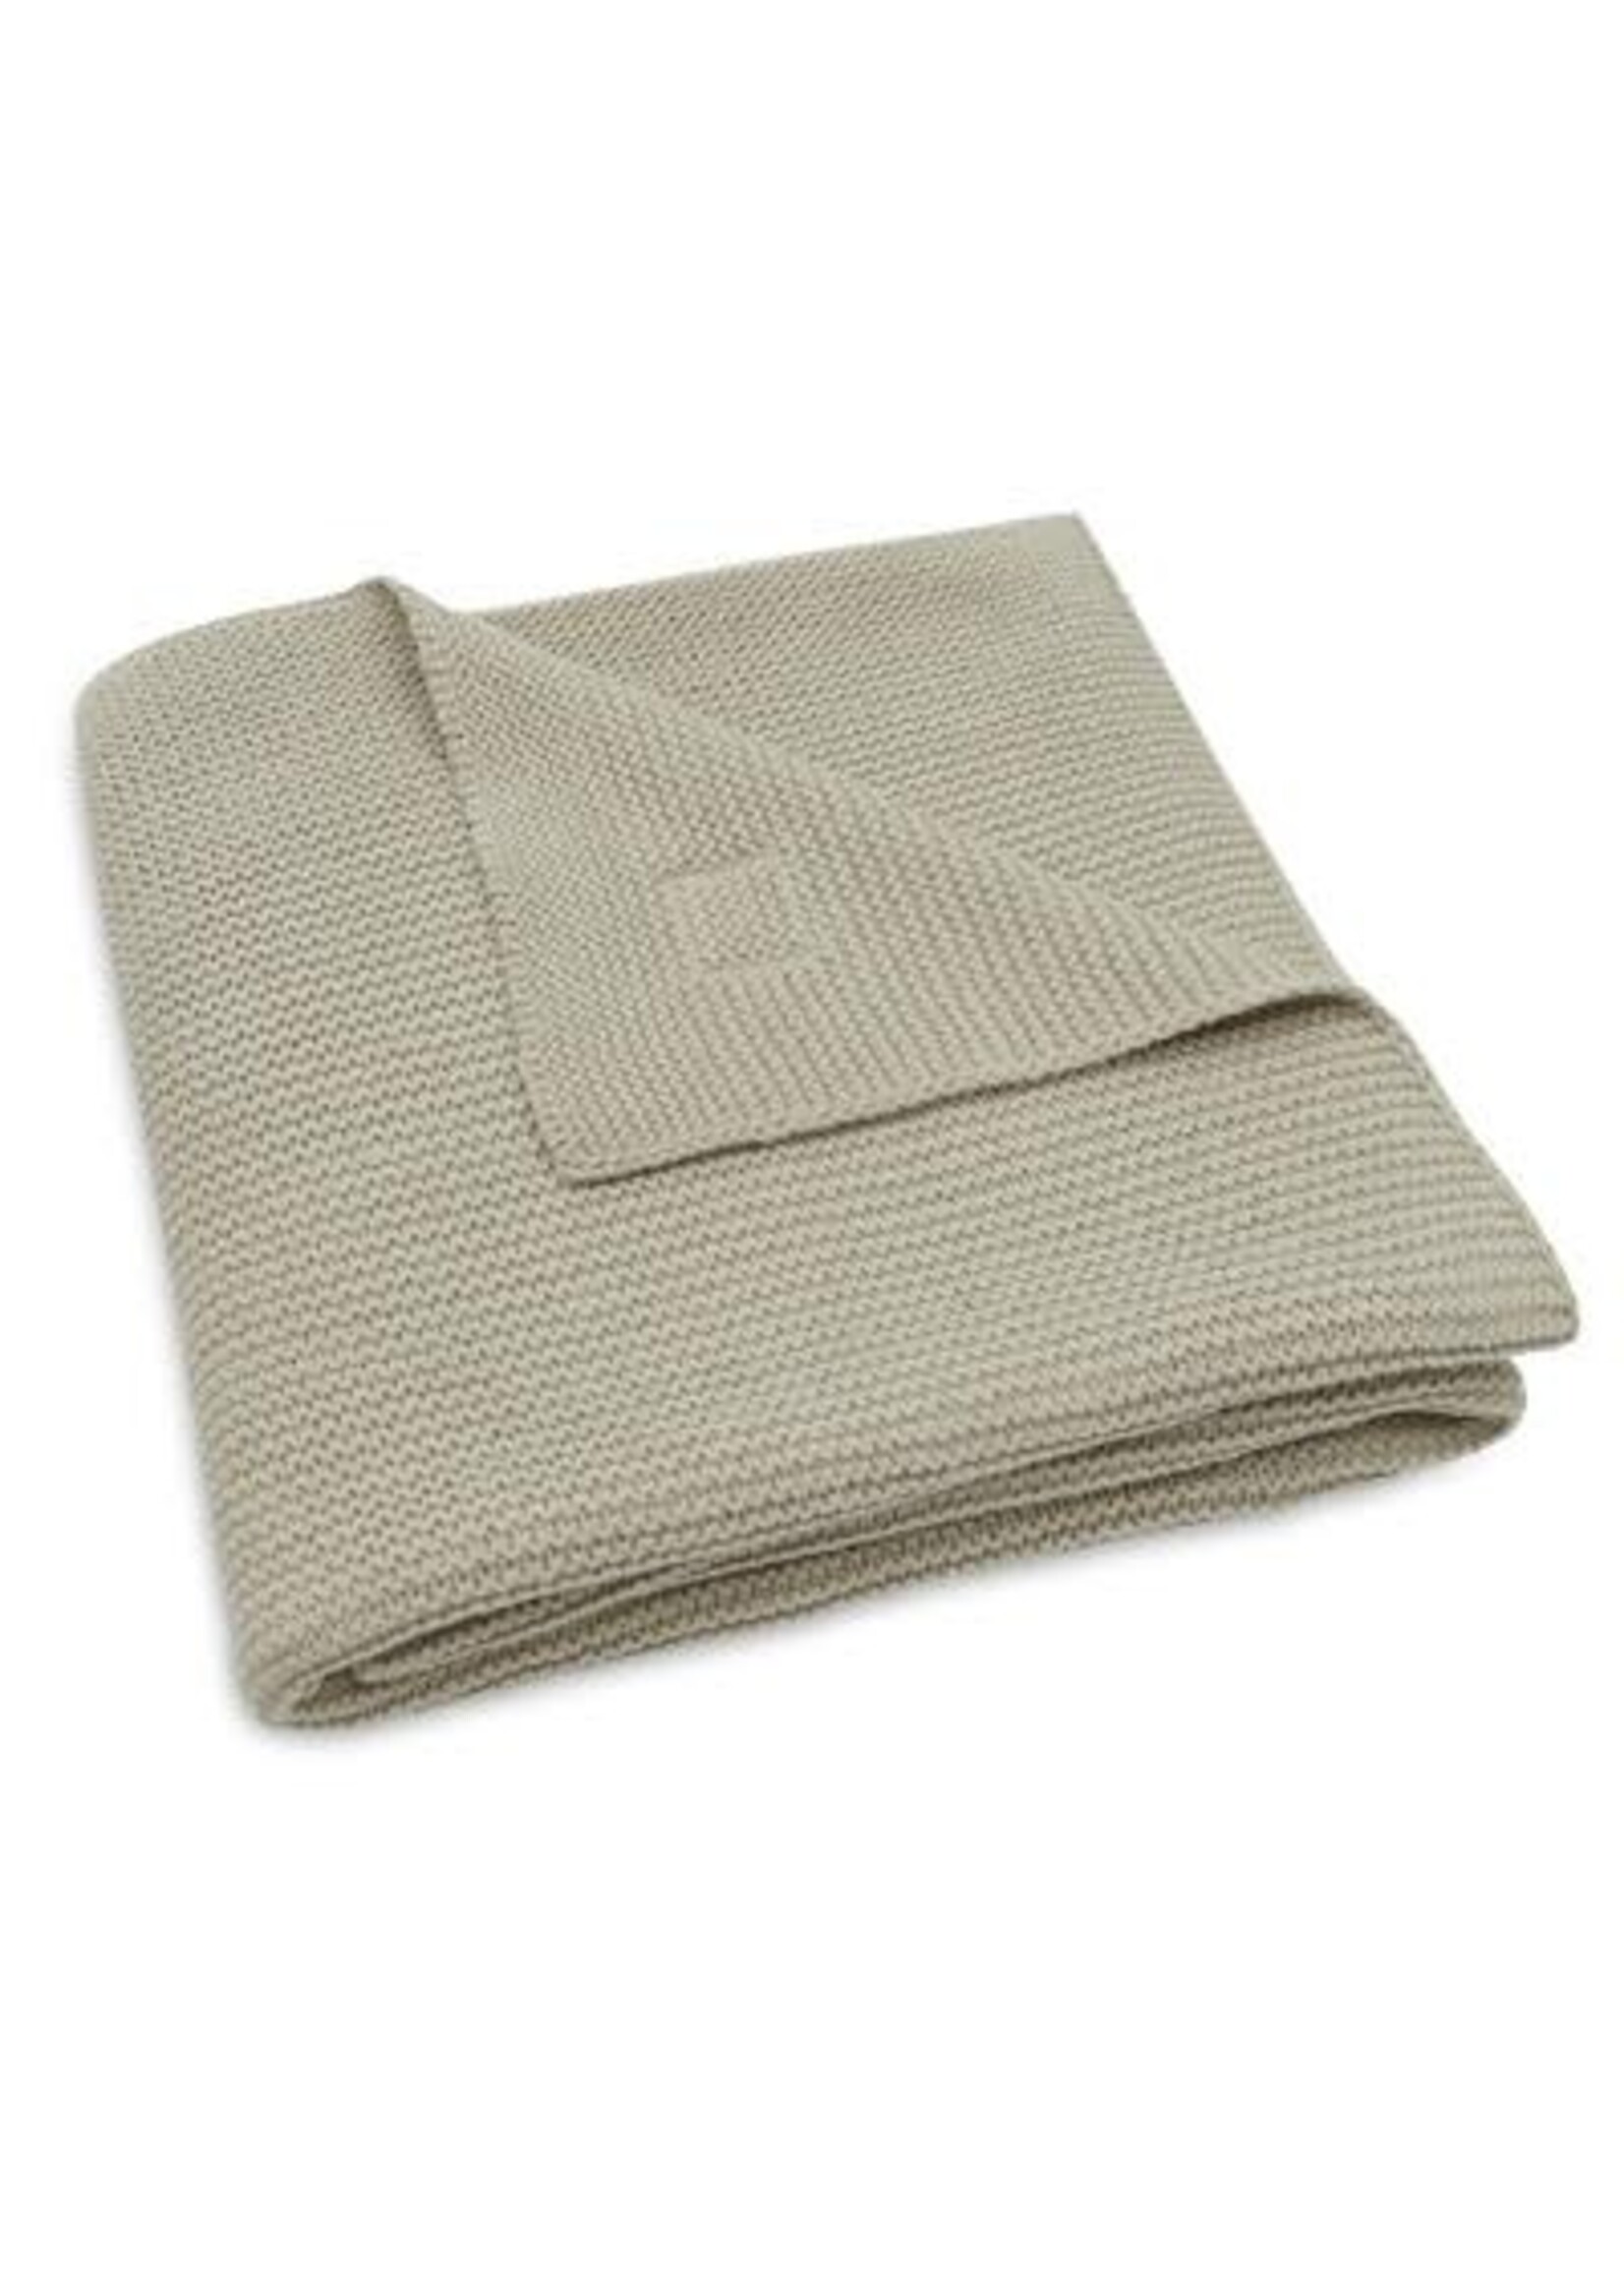 Jollein Jollein Basic knit Olive green deken wieg